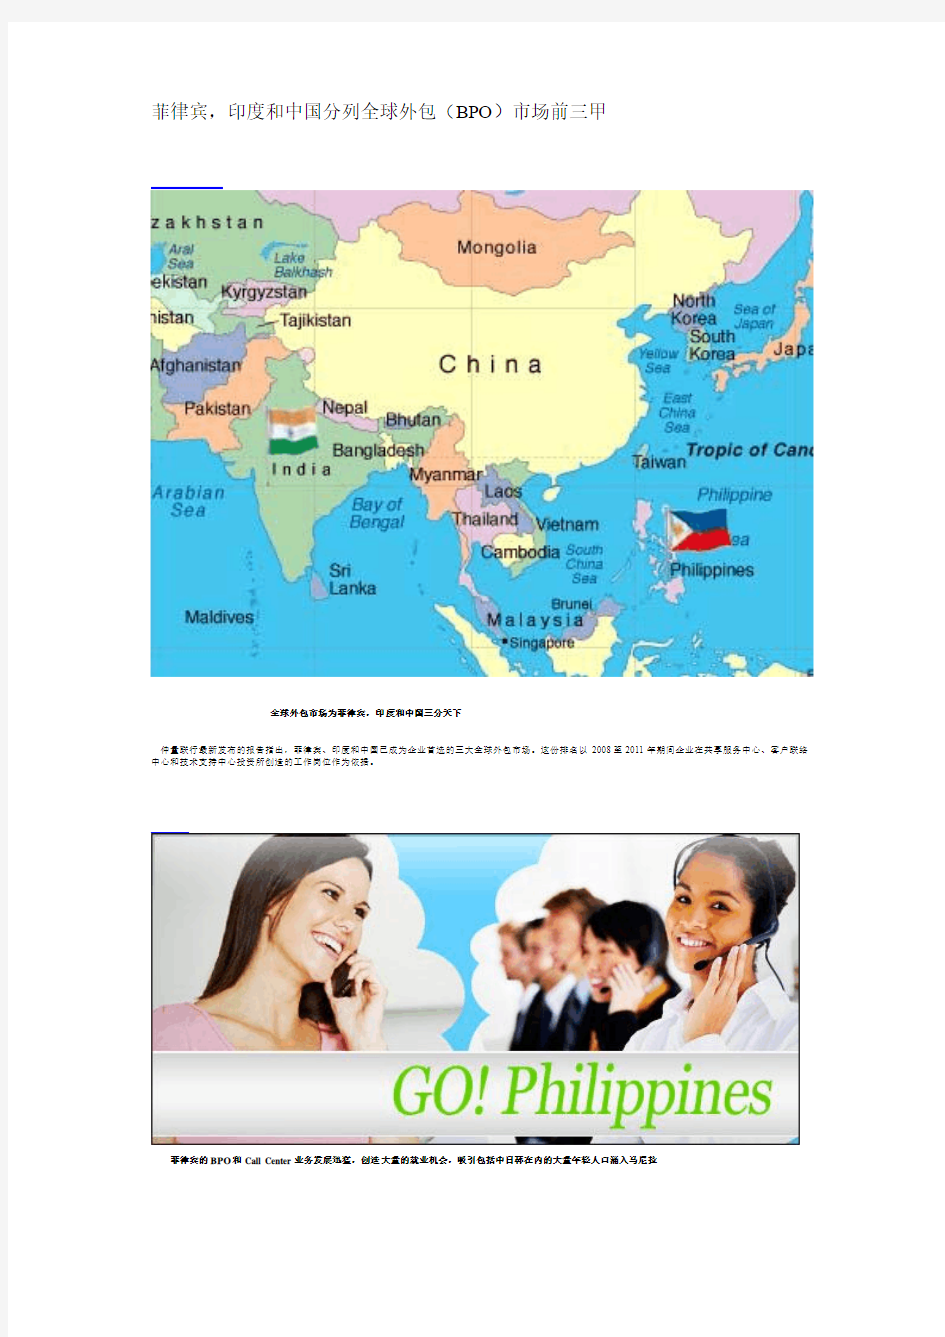 菲律宾,印度和中国分列全球外包(BPO)市场前三甲